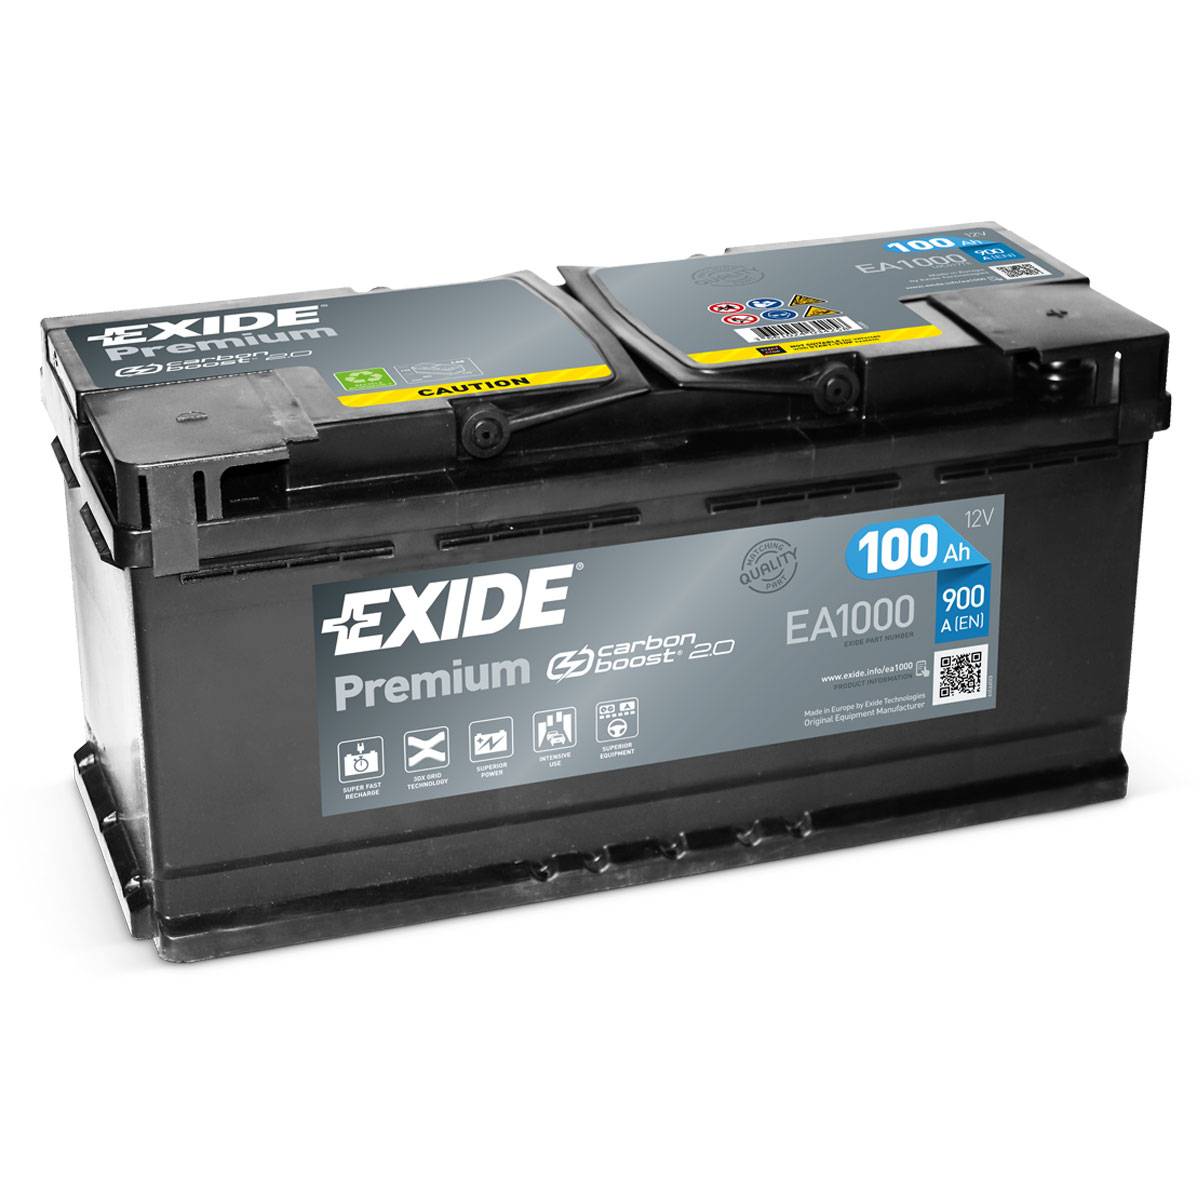 Exide EA1000 Premium Carbon Boost 12V 100Ah 900A Autobatterie